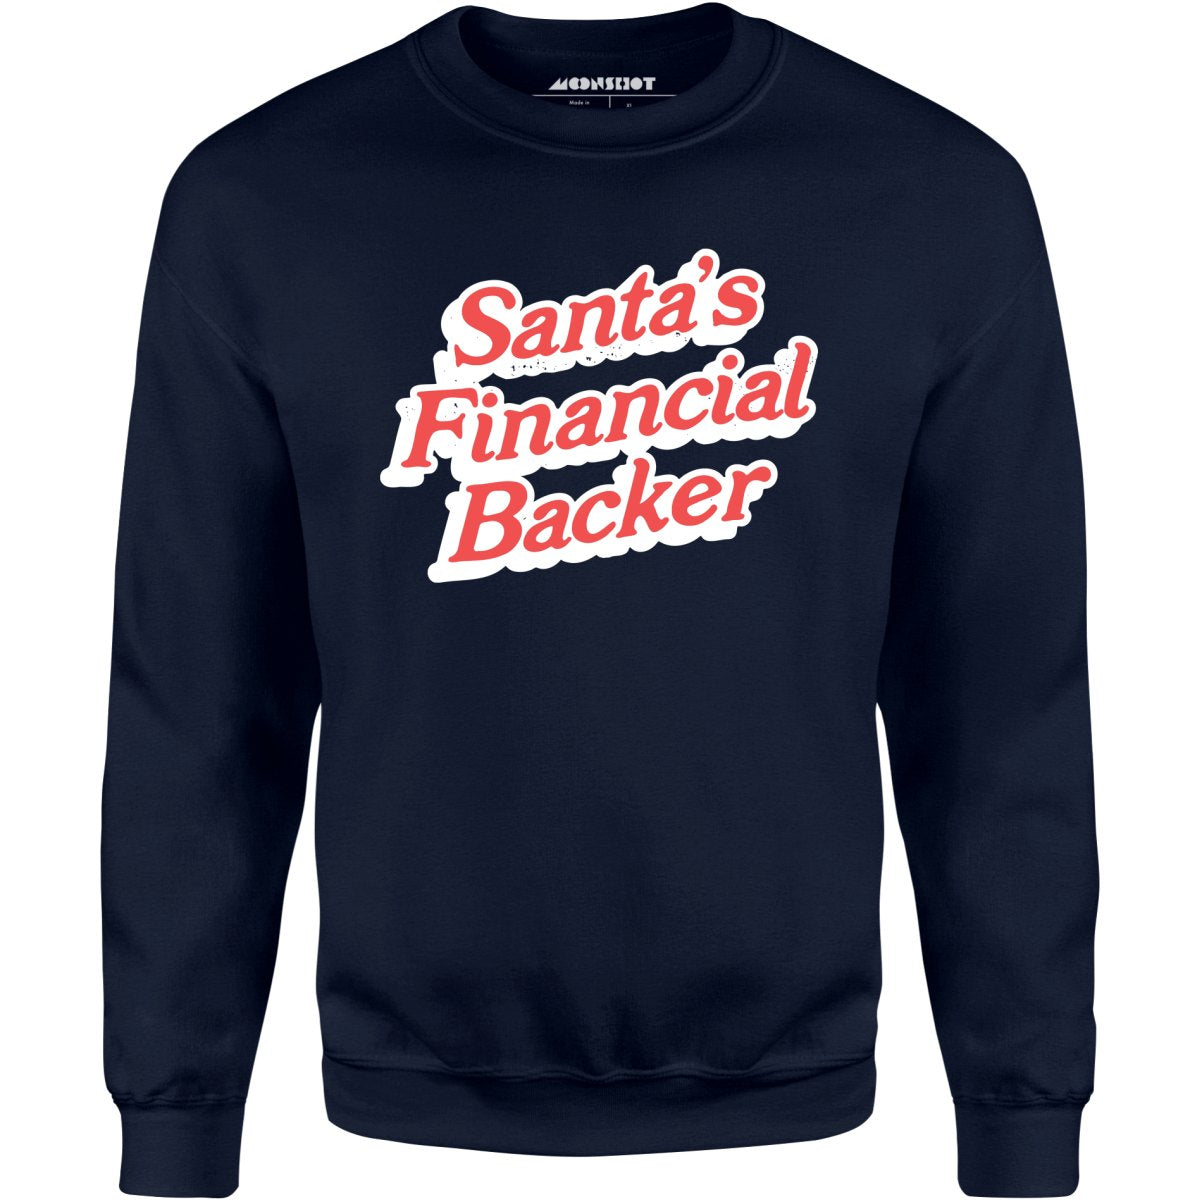 Santa's Financial Backer - Unisex Sweatshirt